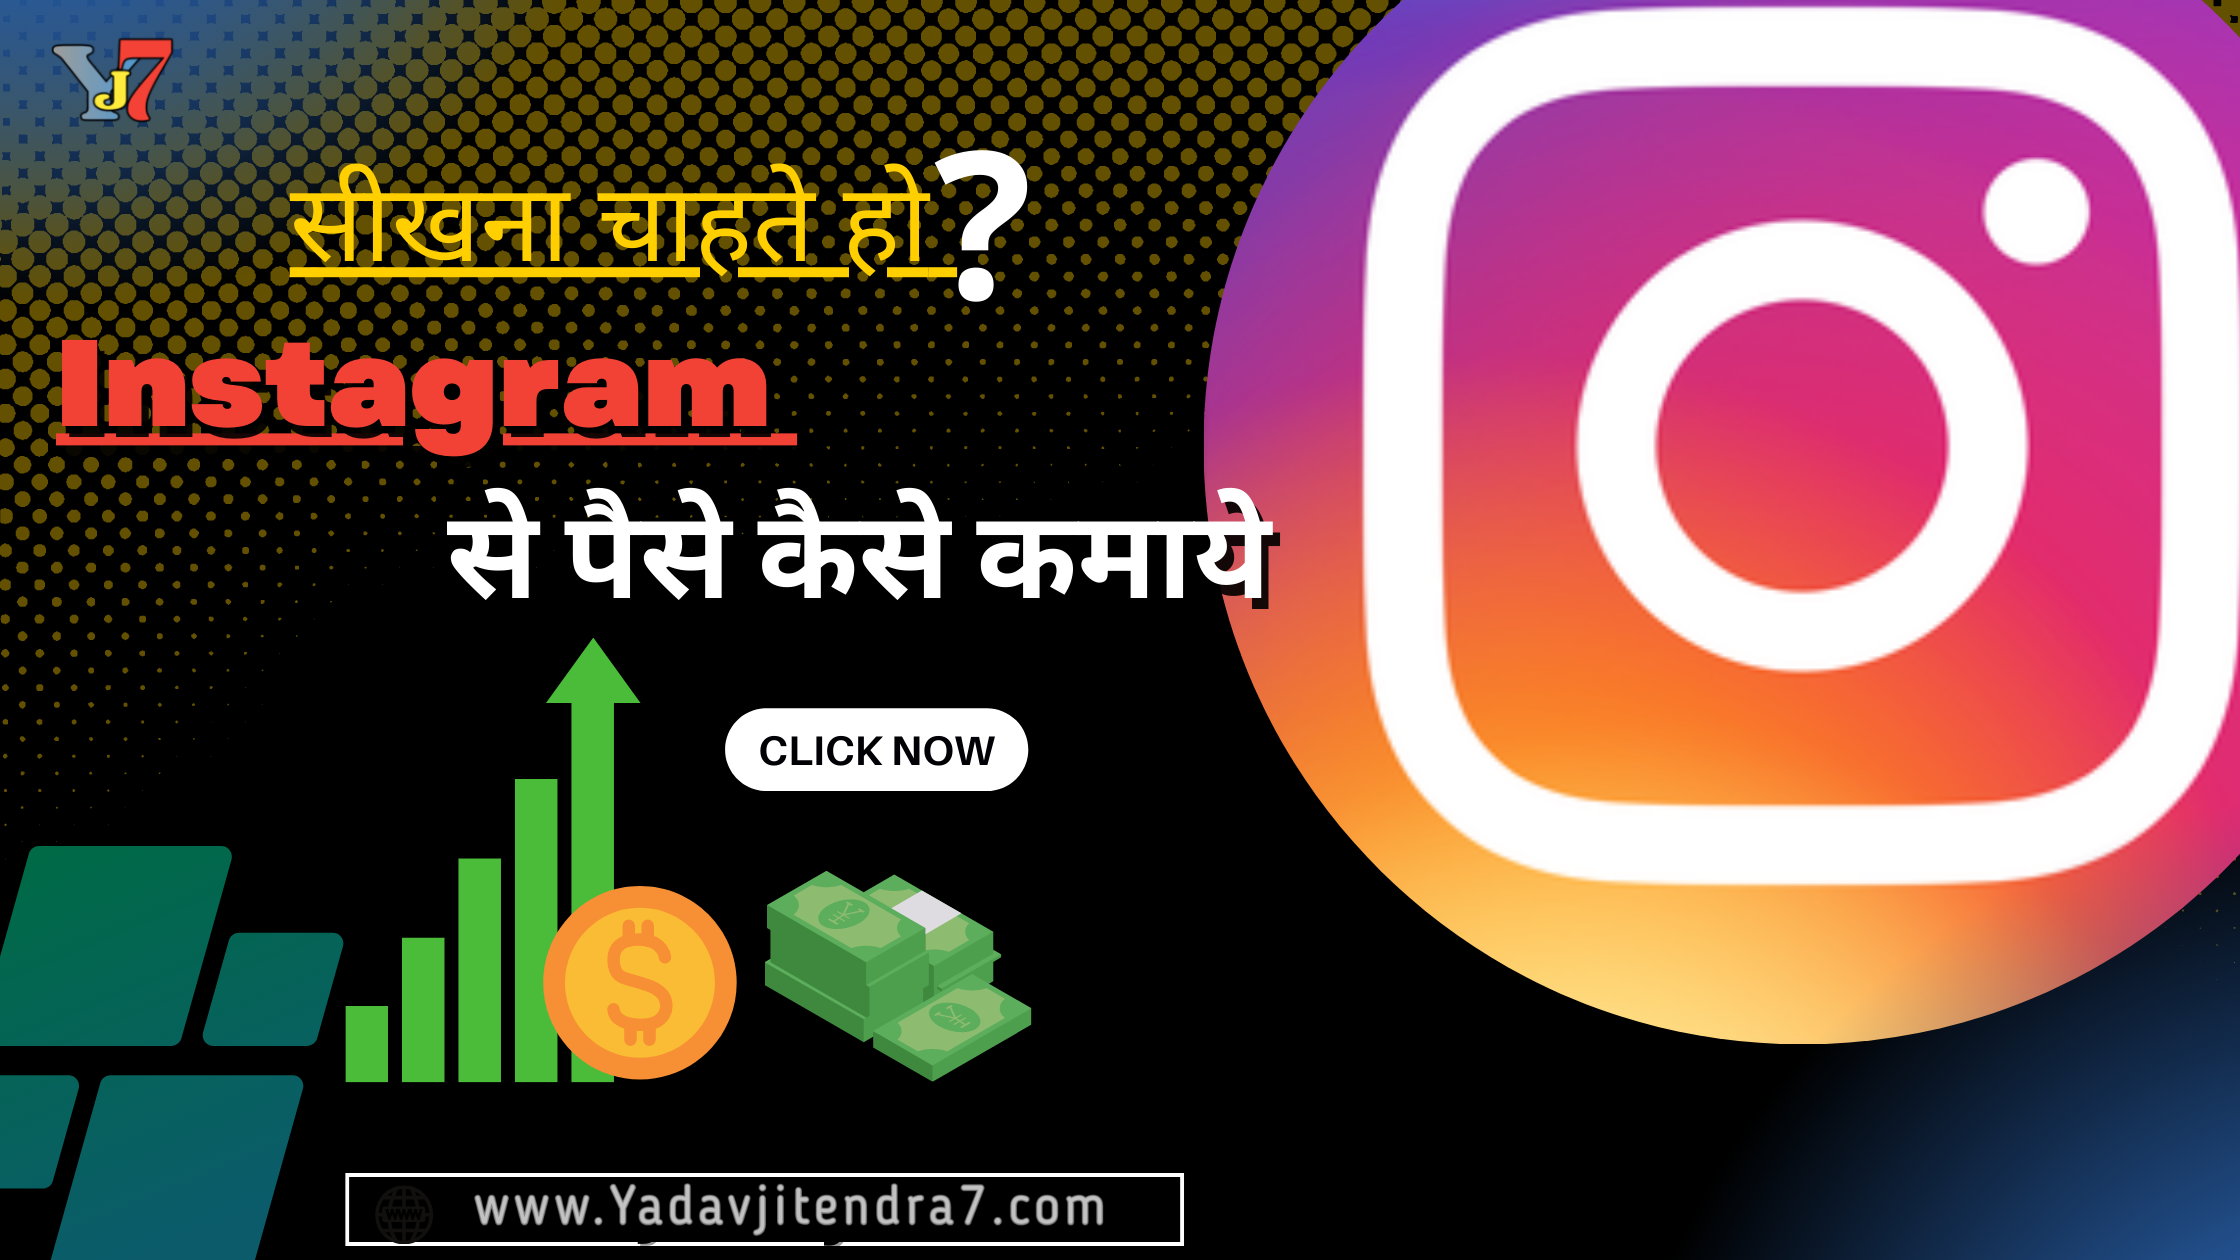 घर बैठे Instagram Chalakar Paise Kaise Kamaye In Hindi How to earn money from instagram yadavjitendra7.com